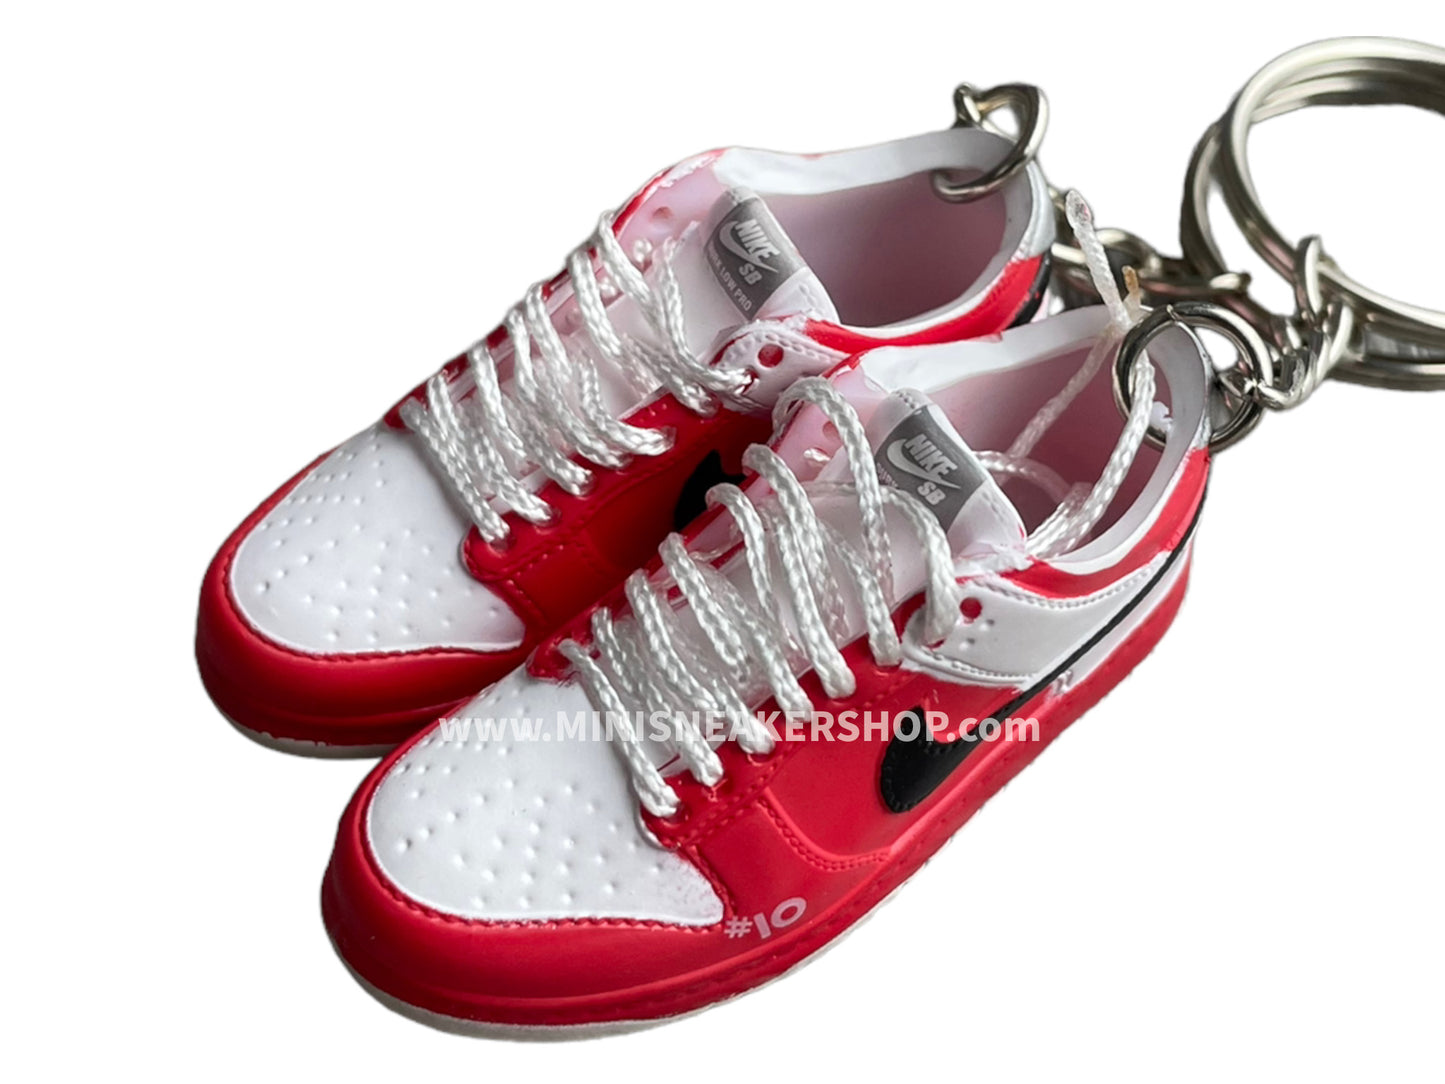 Mini sneaker keychain 3D Dunk - Slam Dunk - Sakuragi White Red